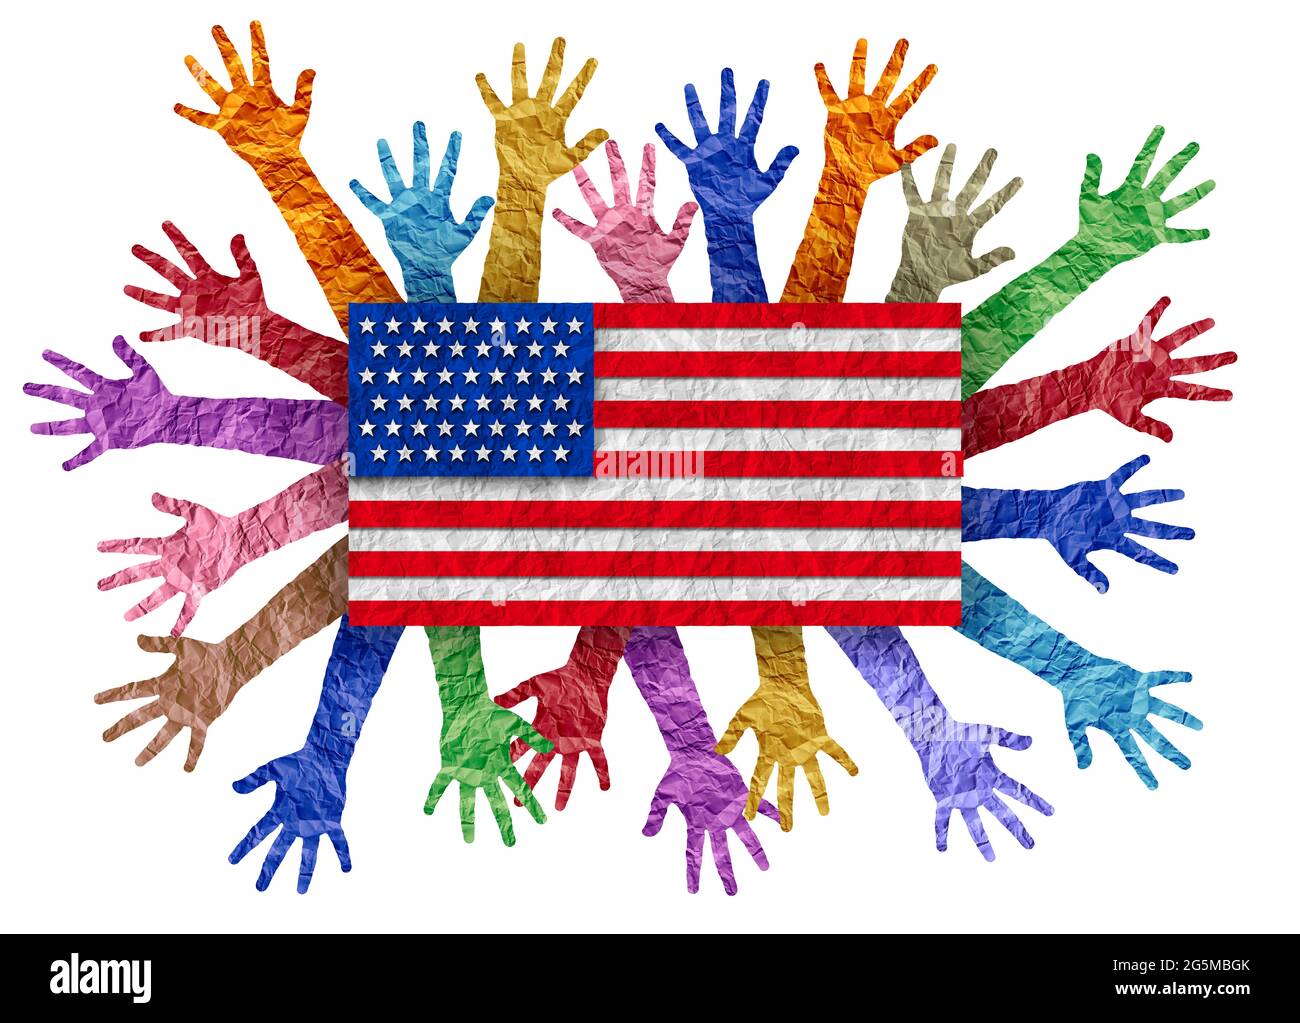 Giornata dell'indipendenza degli Stati Uniti con diverse persone che rinunciano alle mani come una celebrazione americana diversa delle festività nazionali degli Stati Uniti il 4 luglio. Foto Stock